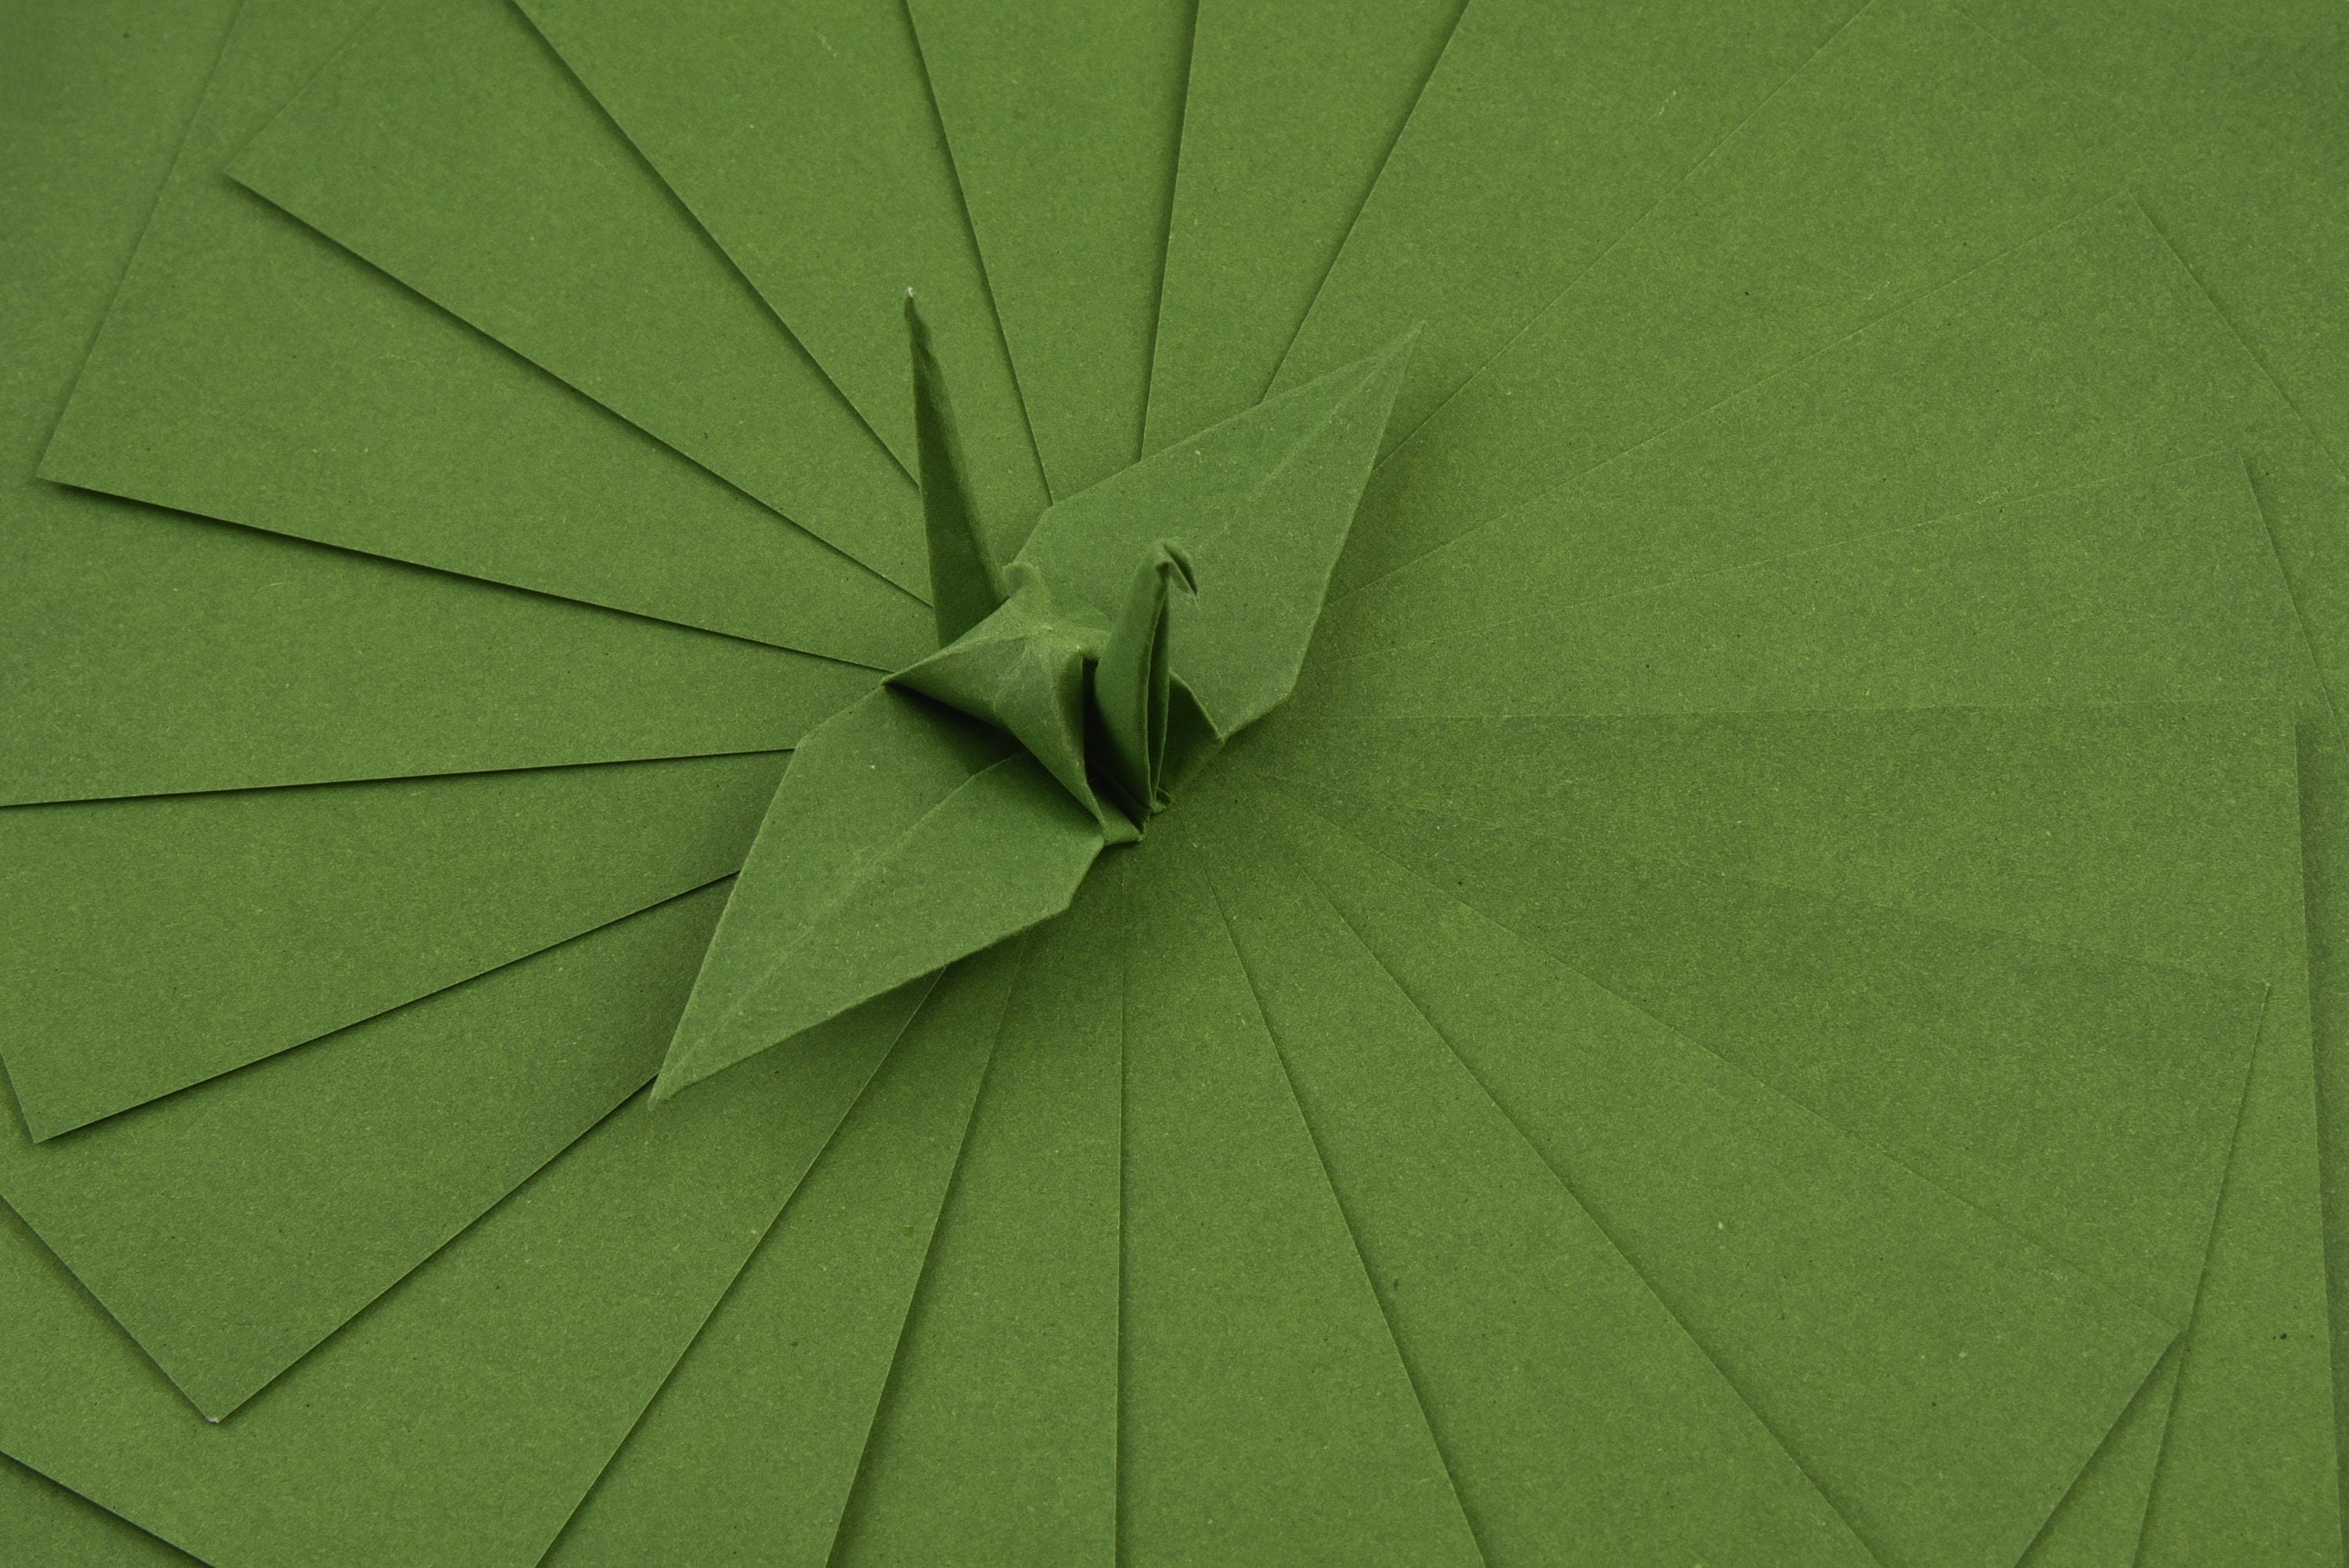 100 Hojas de Papel Origami - 6x6 pulgadas - Paquete de Papel Cuadrado para Plegar, Grullas de Origami y Decoración - S23